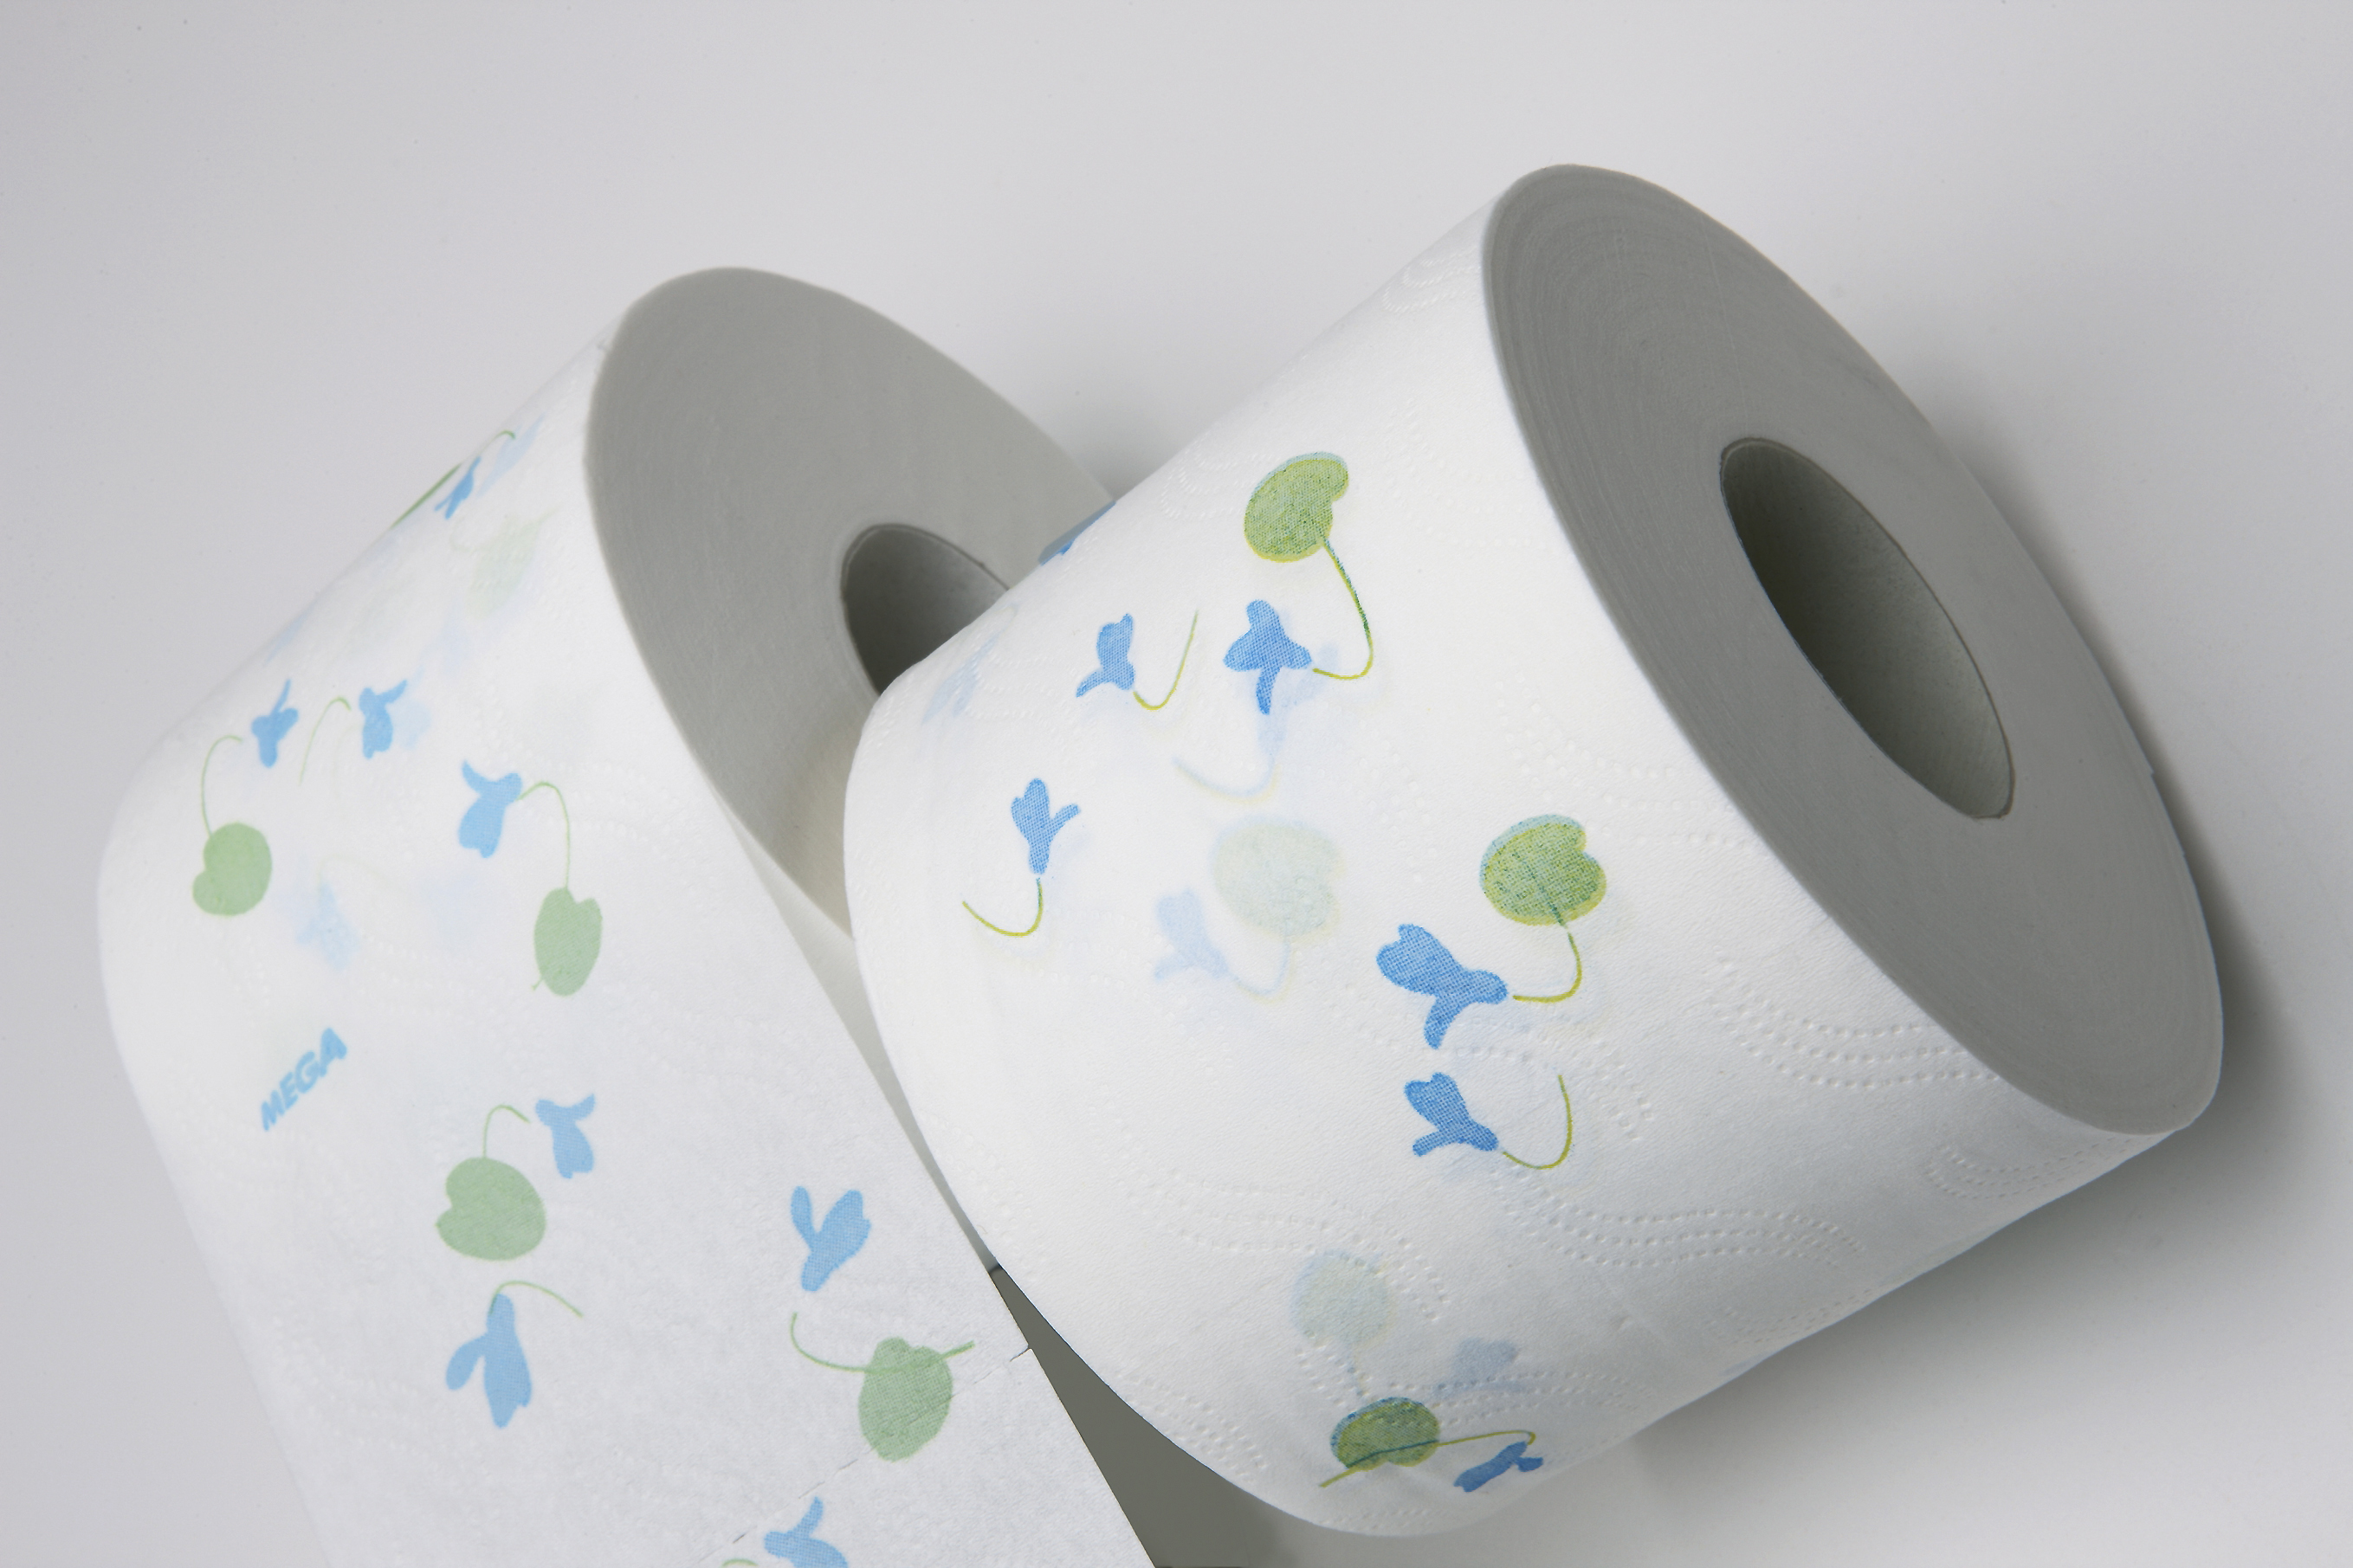 Paper_Tissue rolls_white_blue_green_2012.jpg